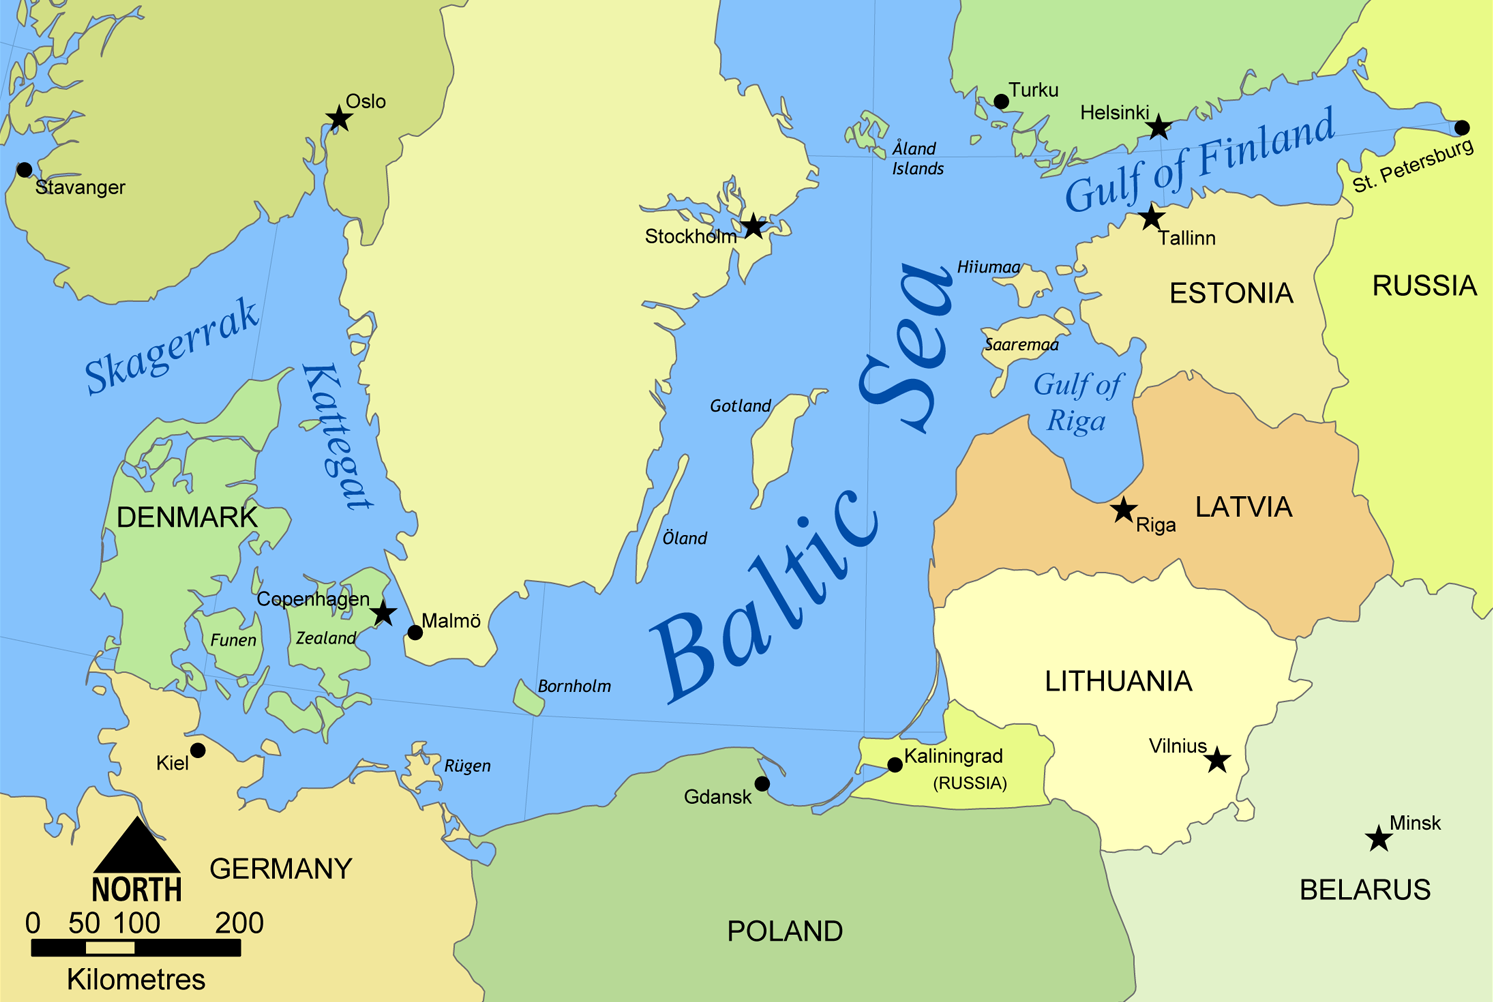 Страны европы к выходу в море. Остров Рюген на карте Балтийского моря. Границы государств в Балтийском море на карте. Карта остров Рюген Балтика. Карта Балтийского моря и страны Балтийского моря.